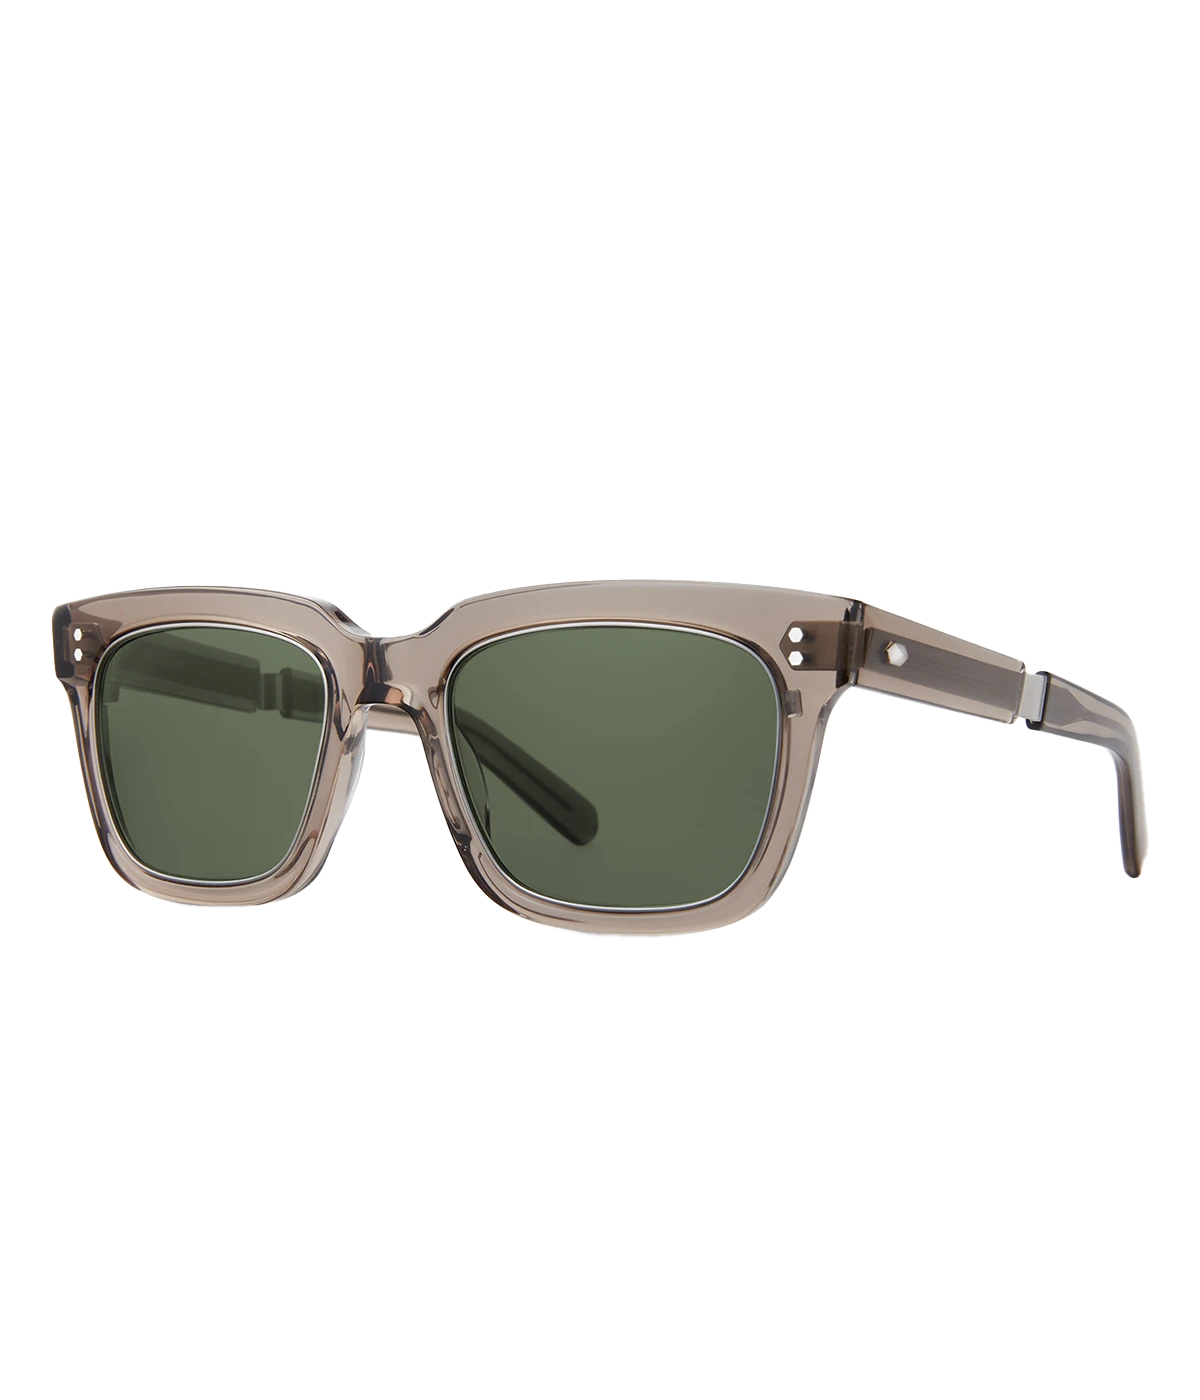 Arnie S 51 Sunglasses in Grey Sage & Platinum Lava